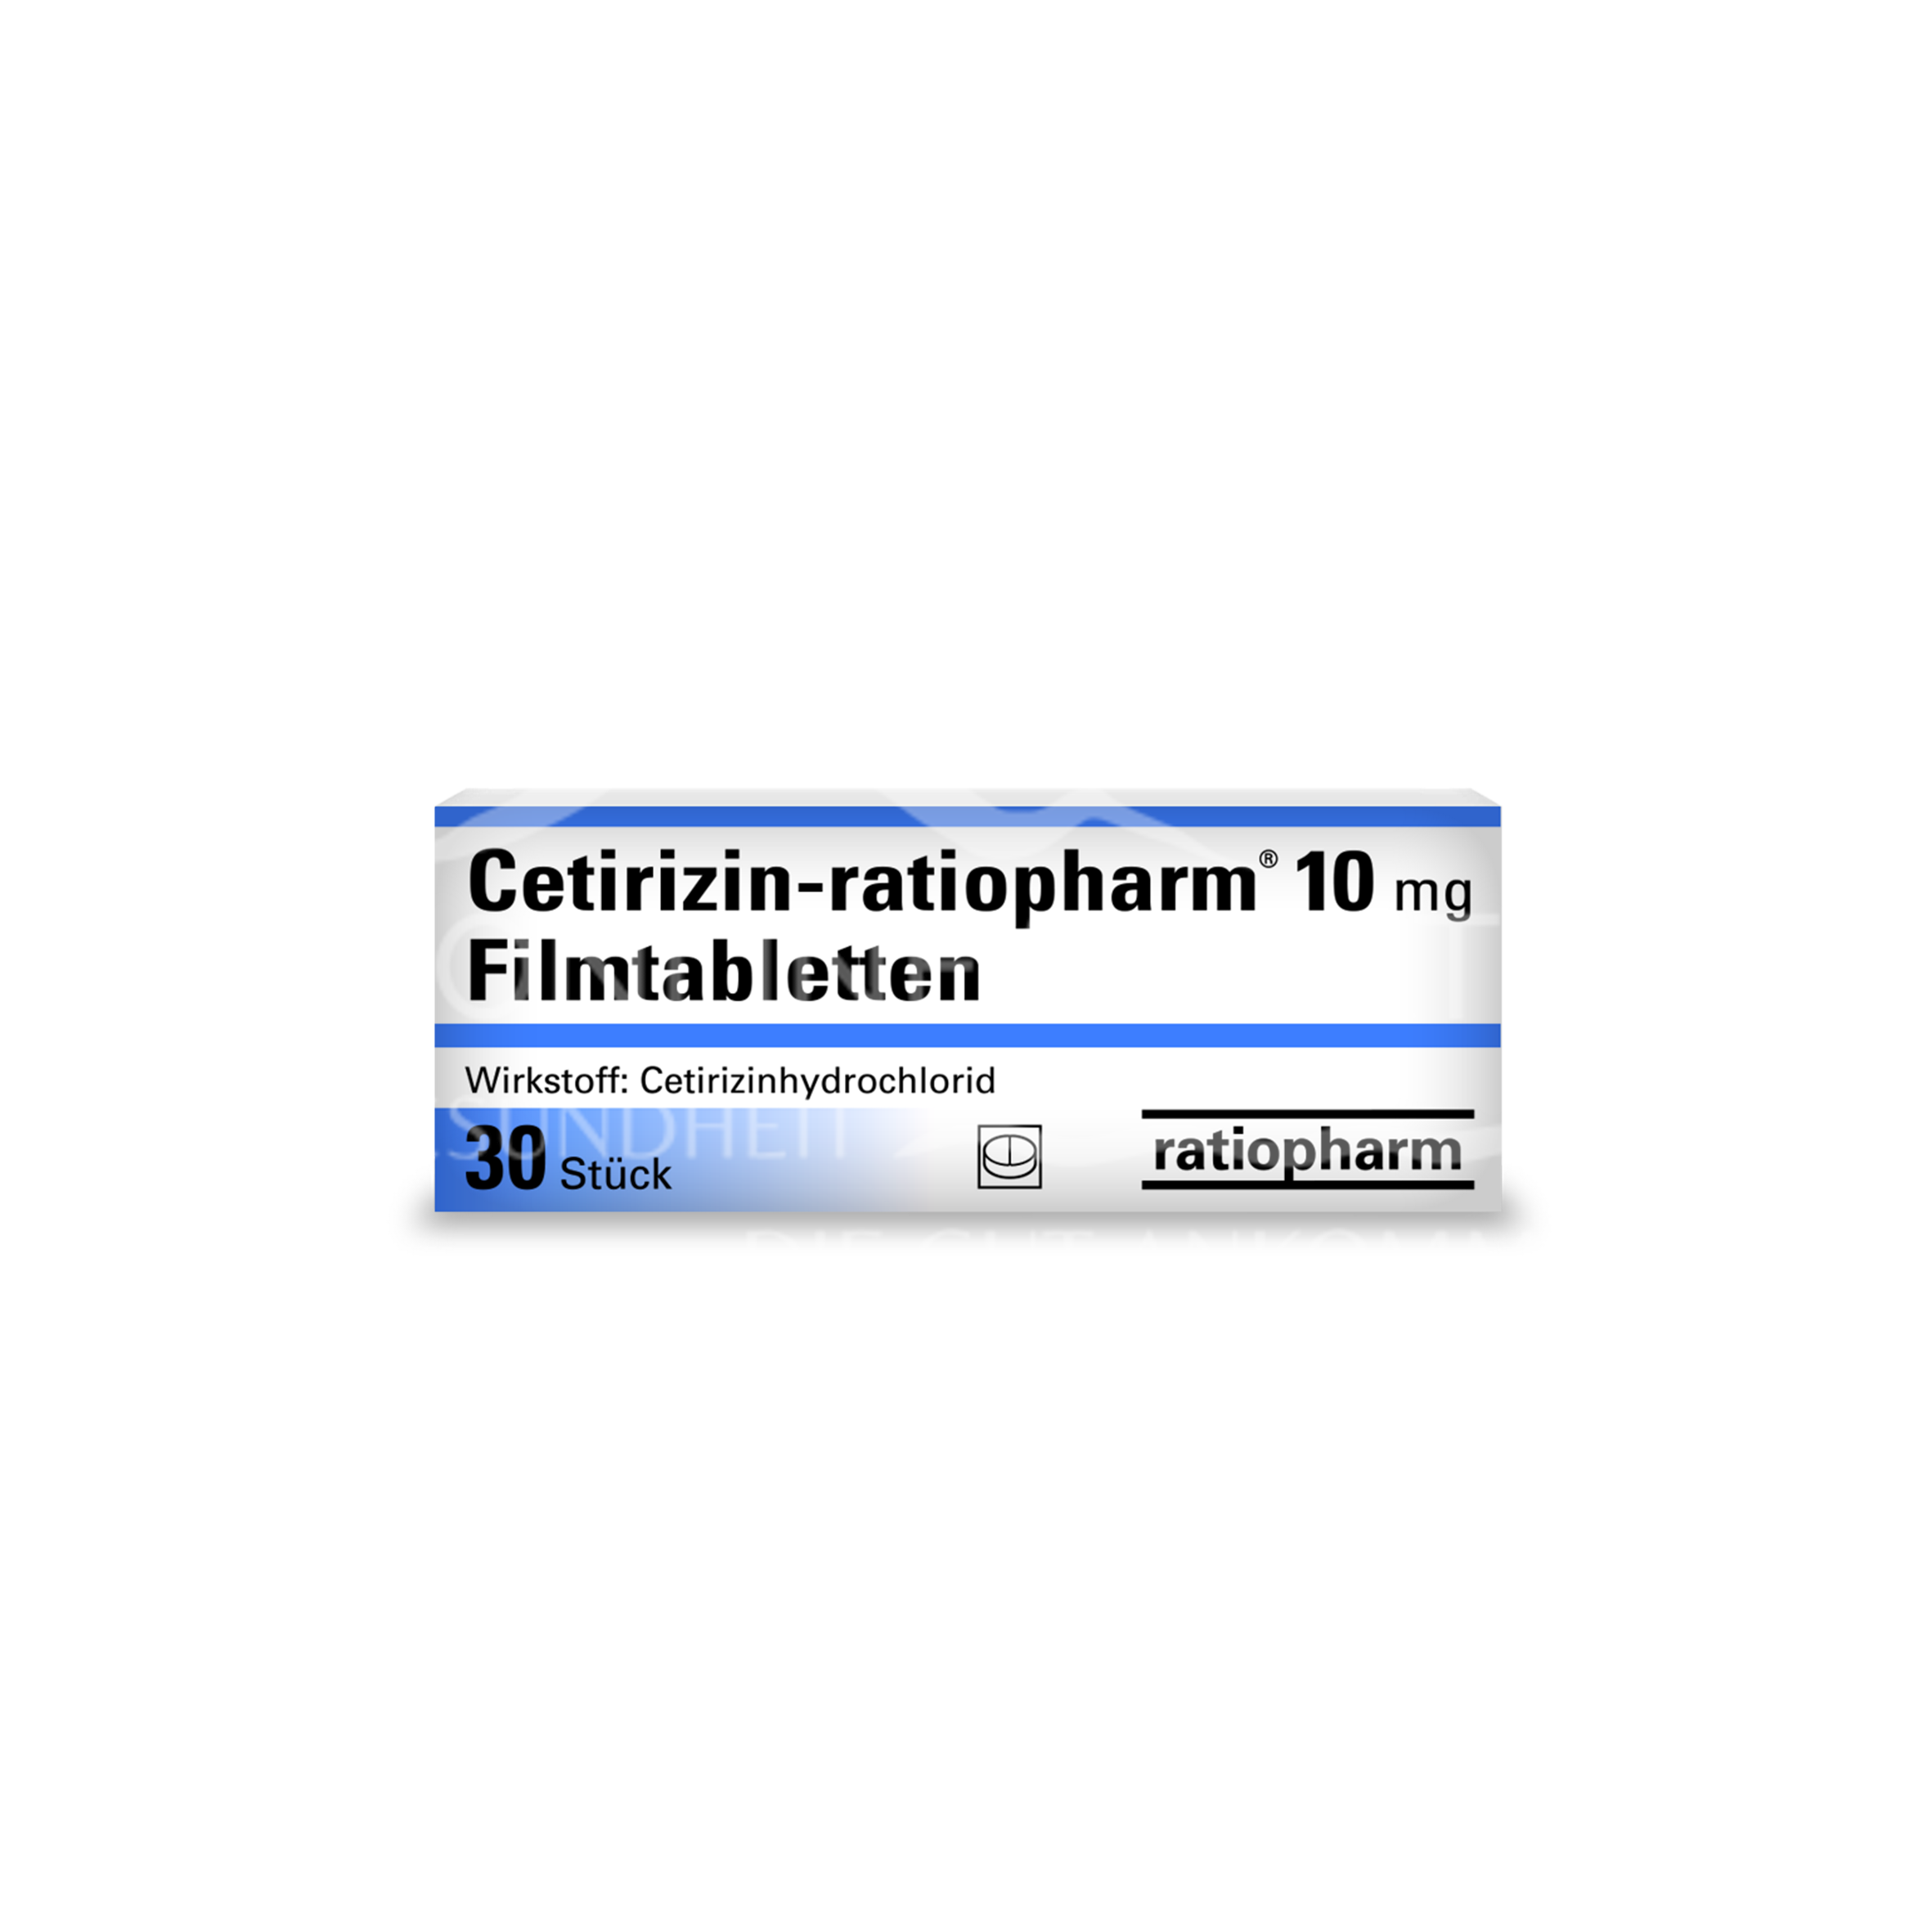 Cetirizin ratiopharm 10 mg Filmtabletten